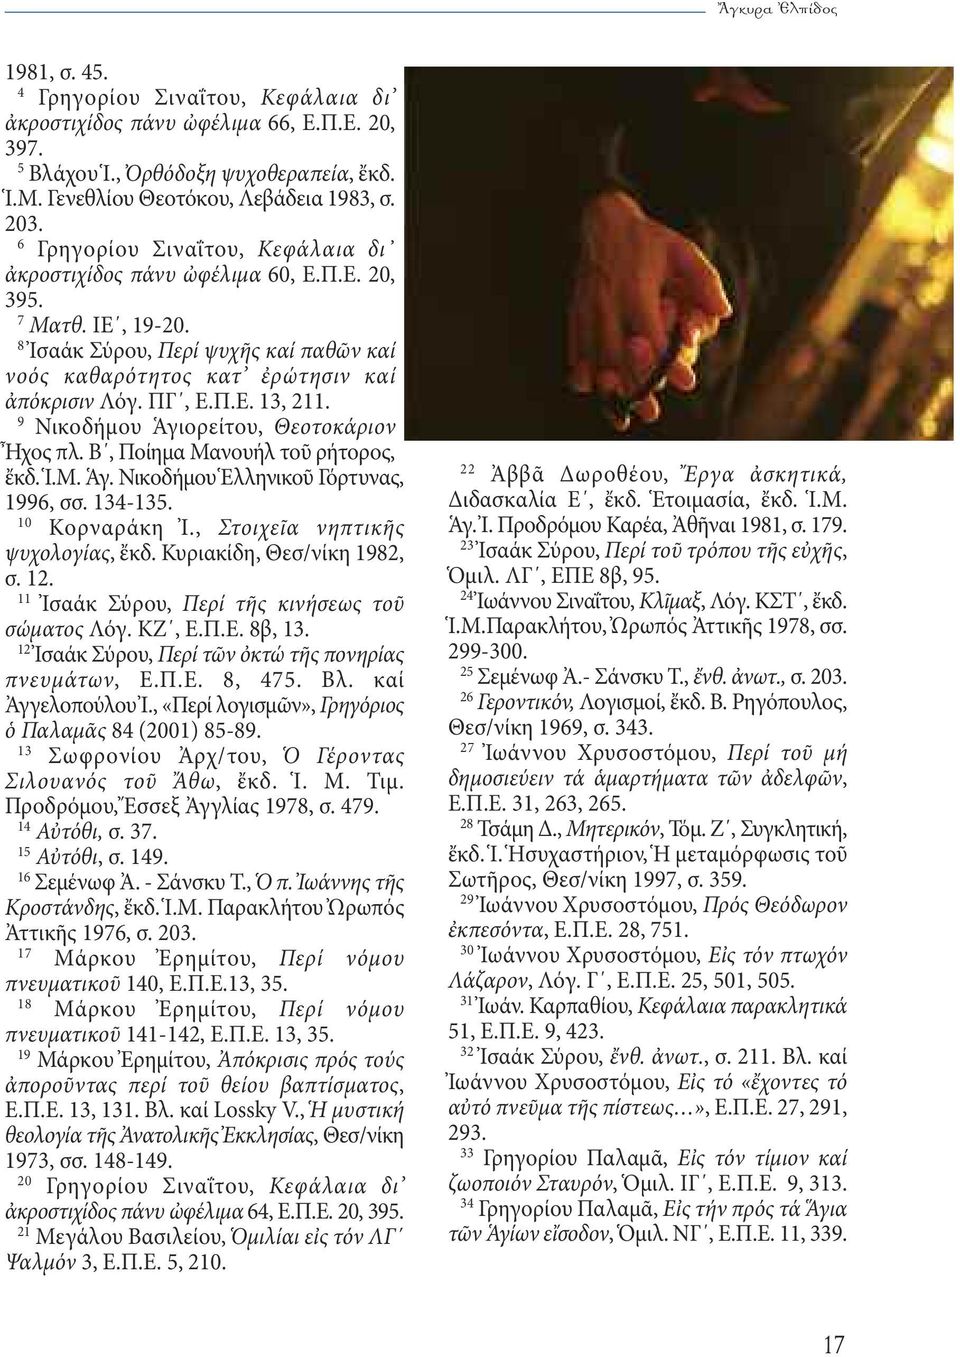 9 Νικοδήμου Ἁγιορείτου, Θεοτοκάριον Ἦχος πλ. Β, Ποίημα Μανουήλ τοῦ ρήτορος, ἔκδ. Ἱ.Μ. Ἁγ. Νικοδήμου Ἑλληνικοῦ Γόρτυνας, 1996, σσ. 134-135. 10 Κορναράκη Ἰ., Στοιχεῖα νηπτικῆς ψυχολογίας, ἔκδ.